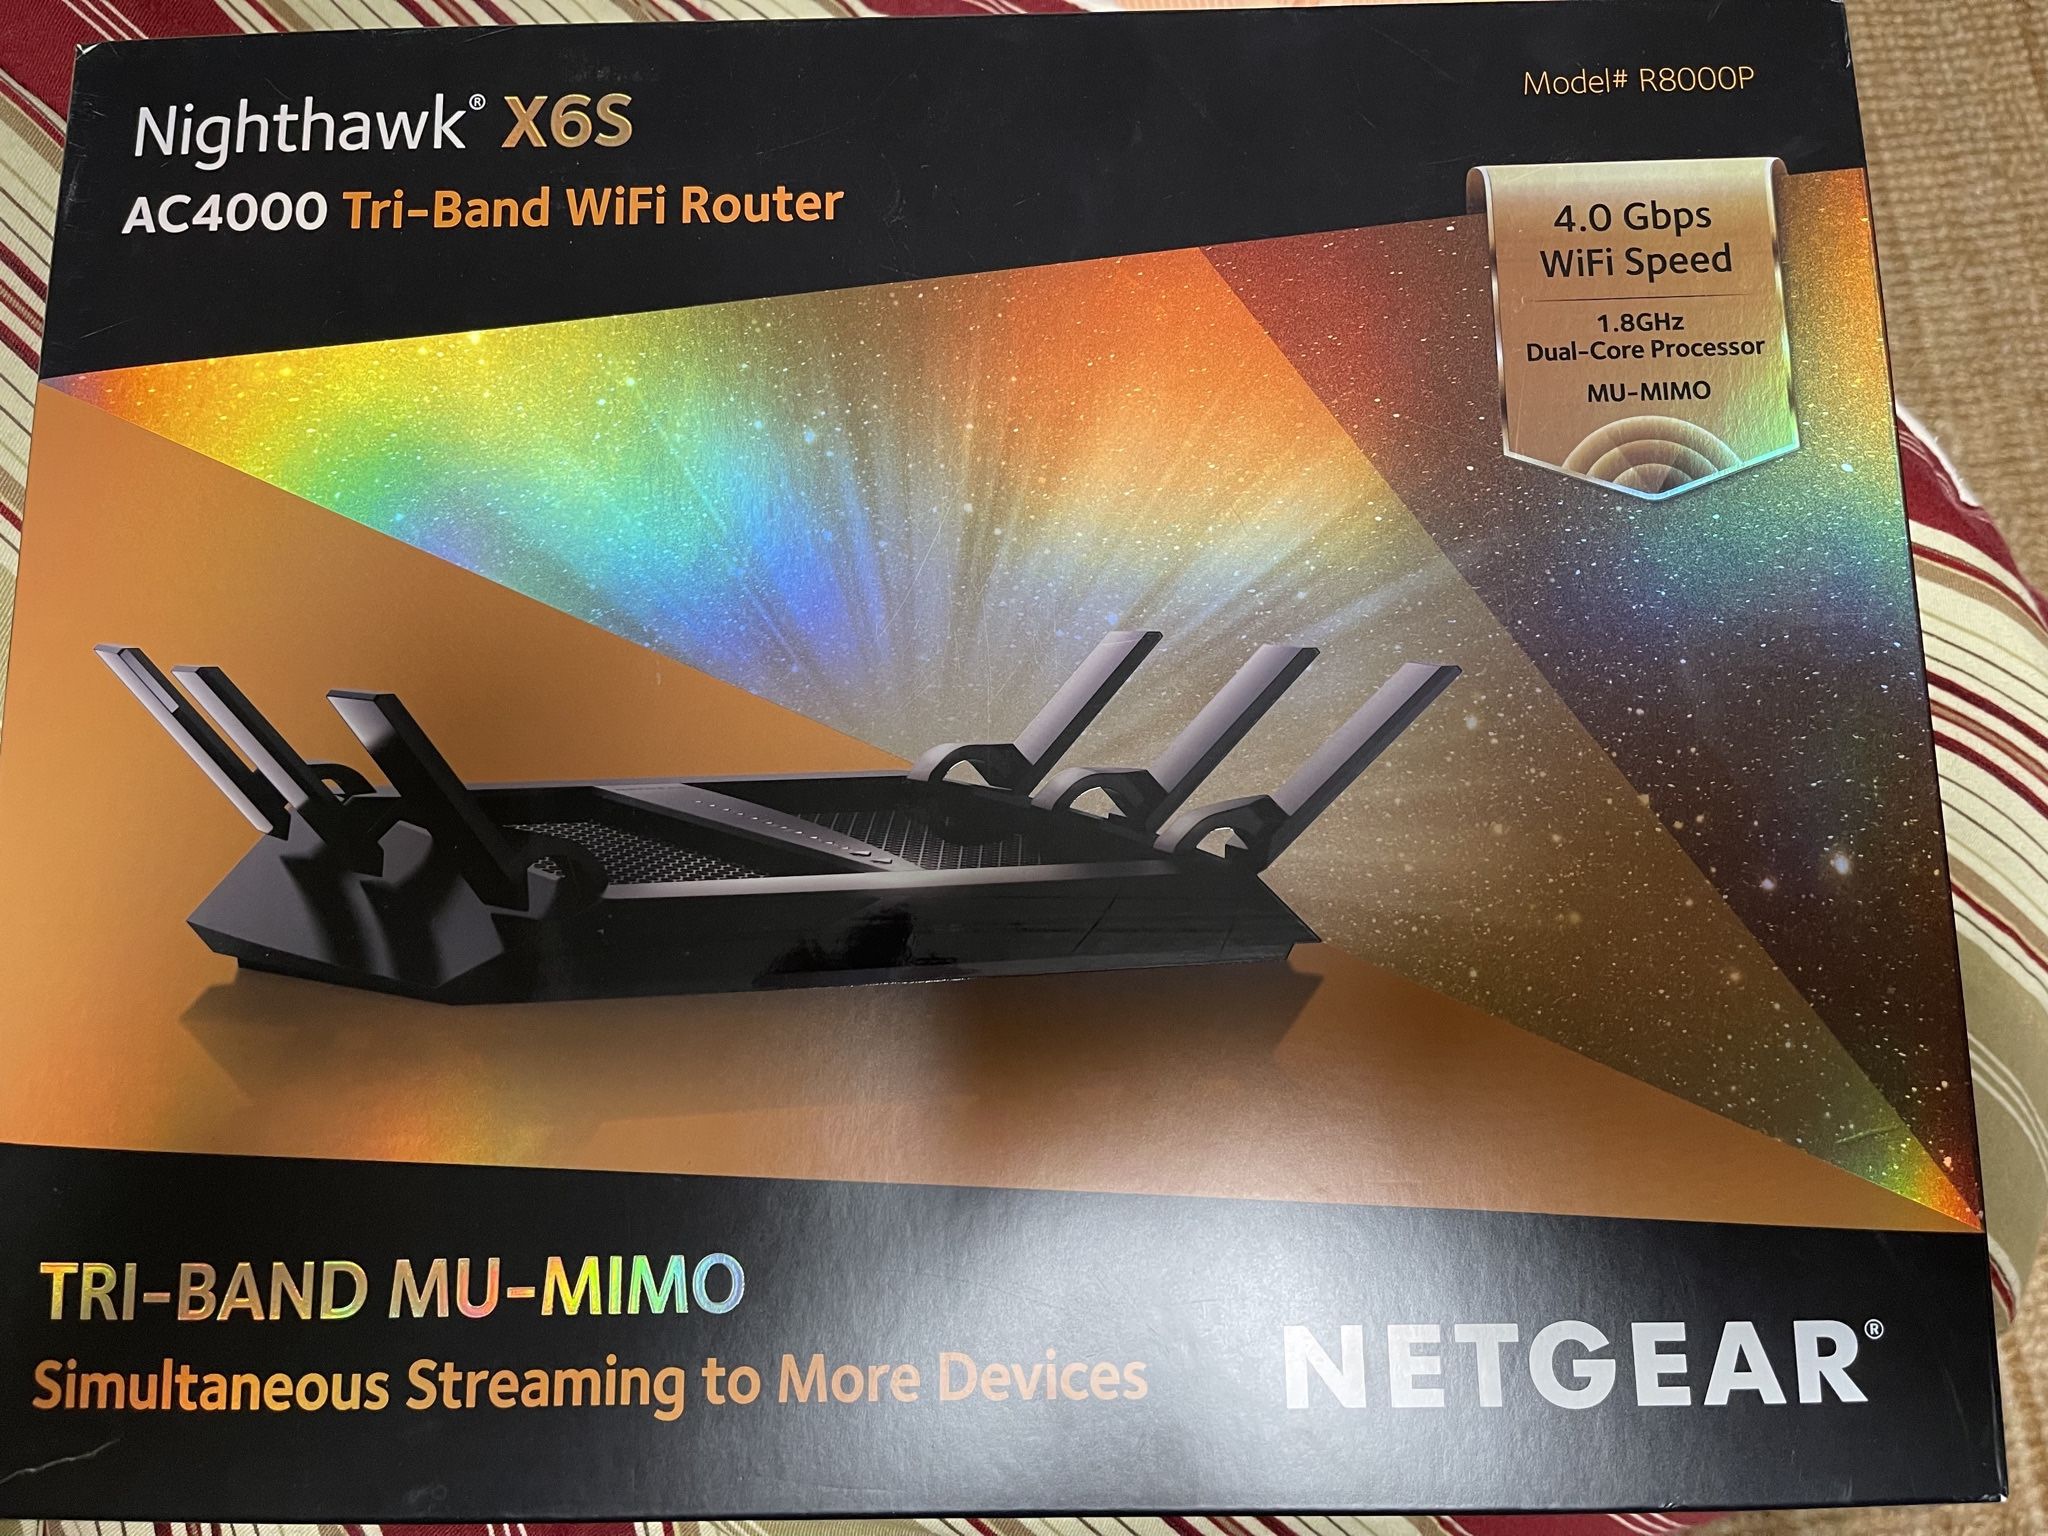 Netgear Nighthawk X6S Smart WiFi Router (R8000P)